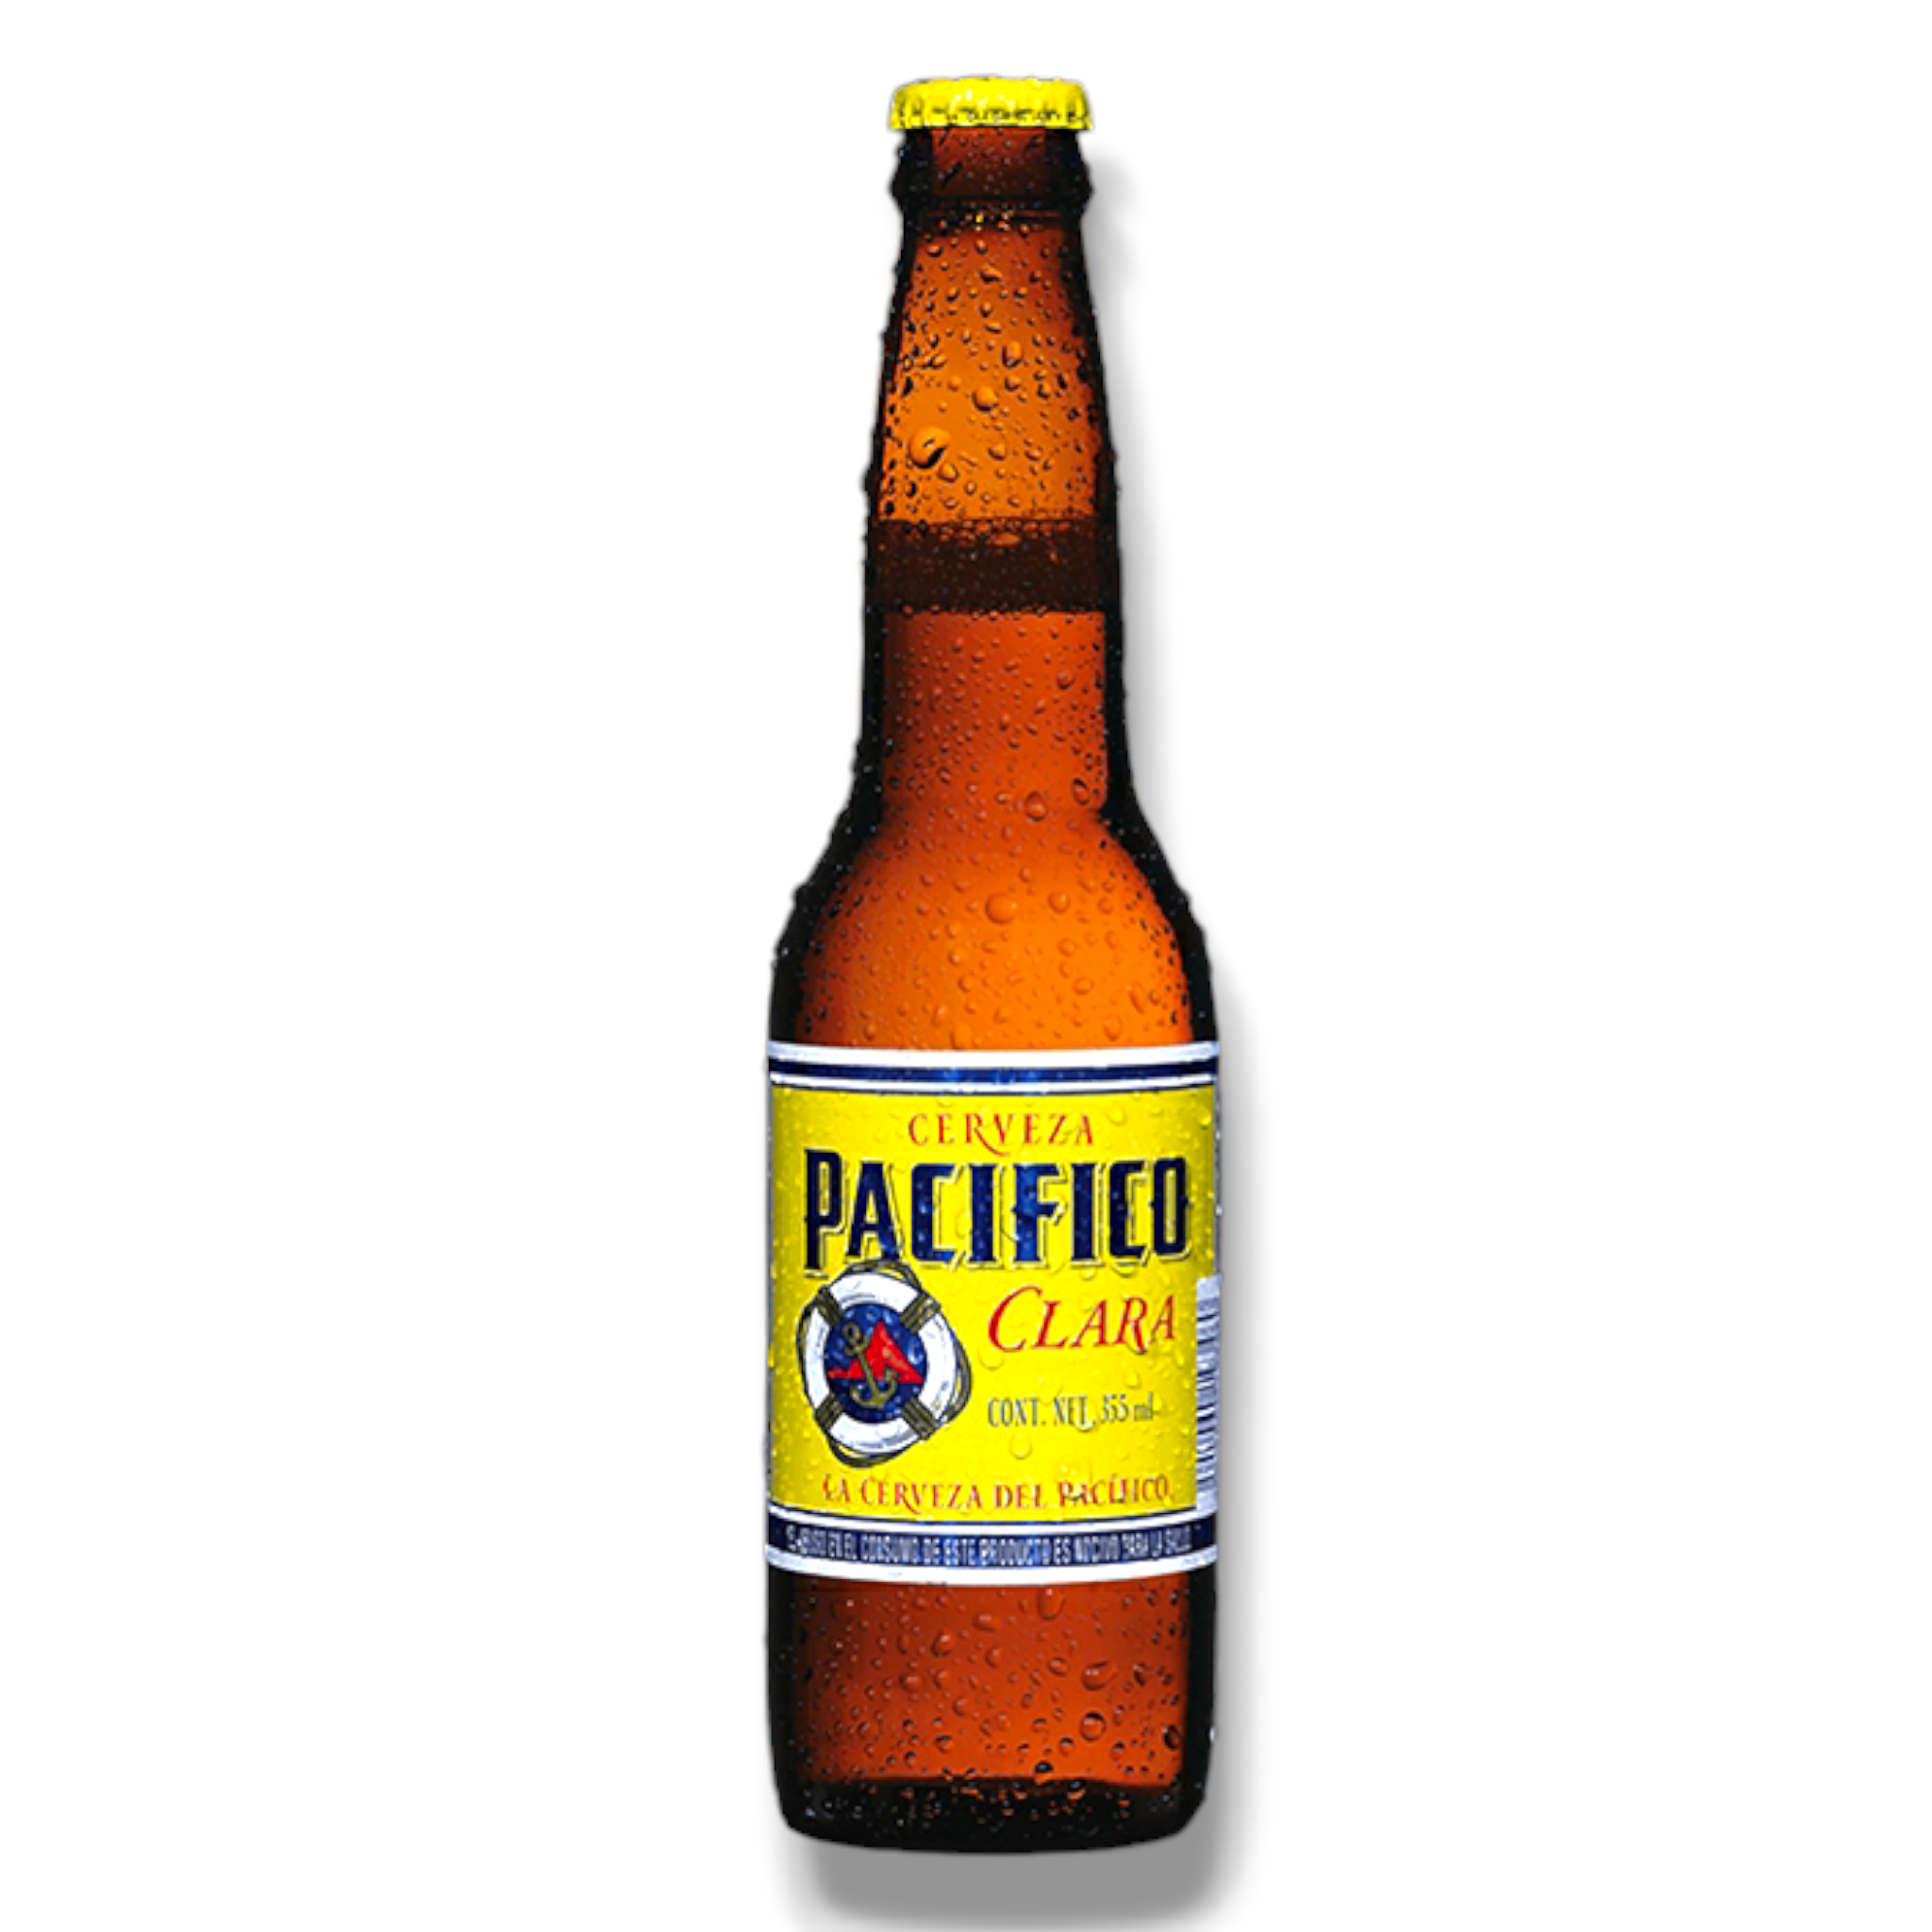 Pacifico Clara 355ml - helles Bier aus Mexiko mit 4,5% Vol.